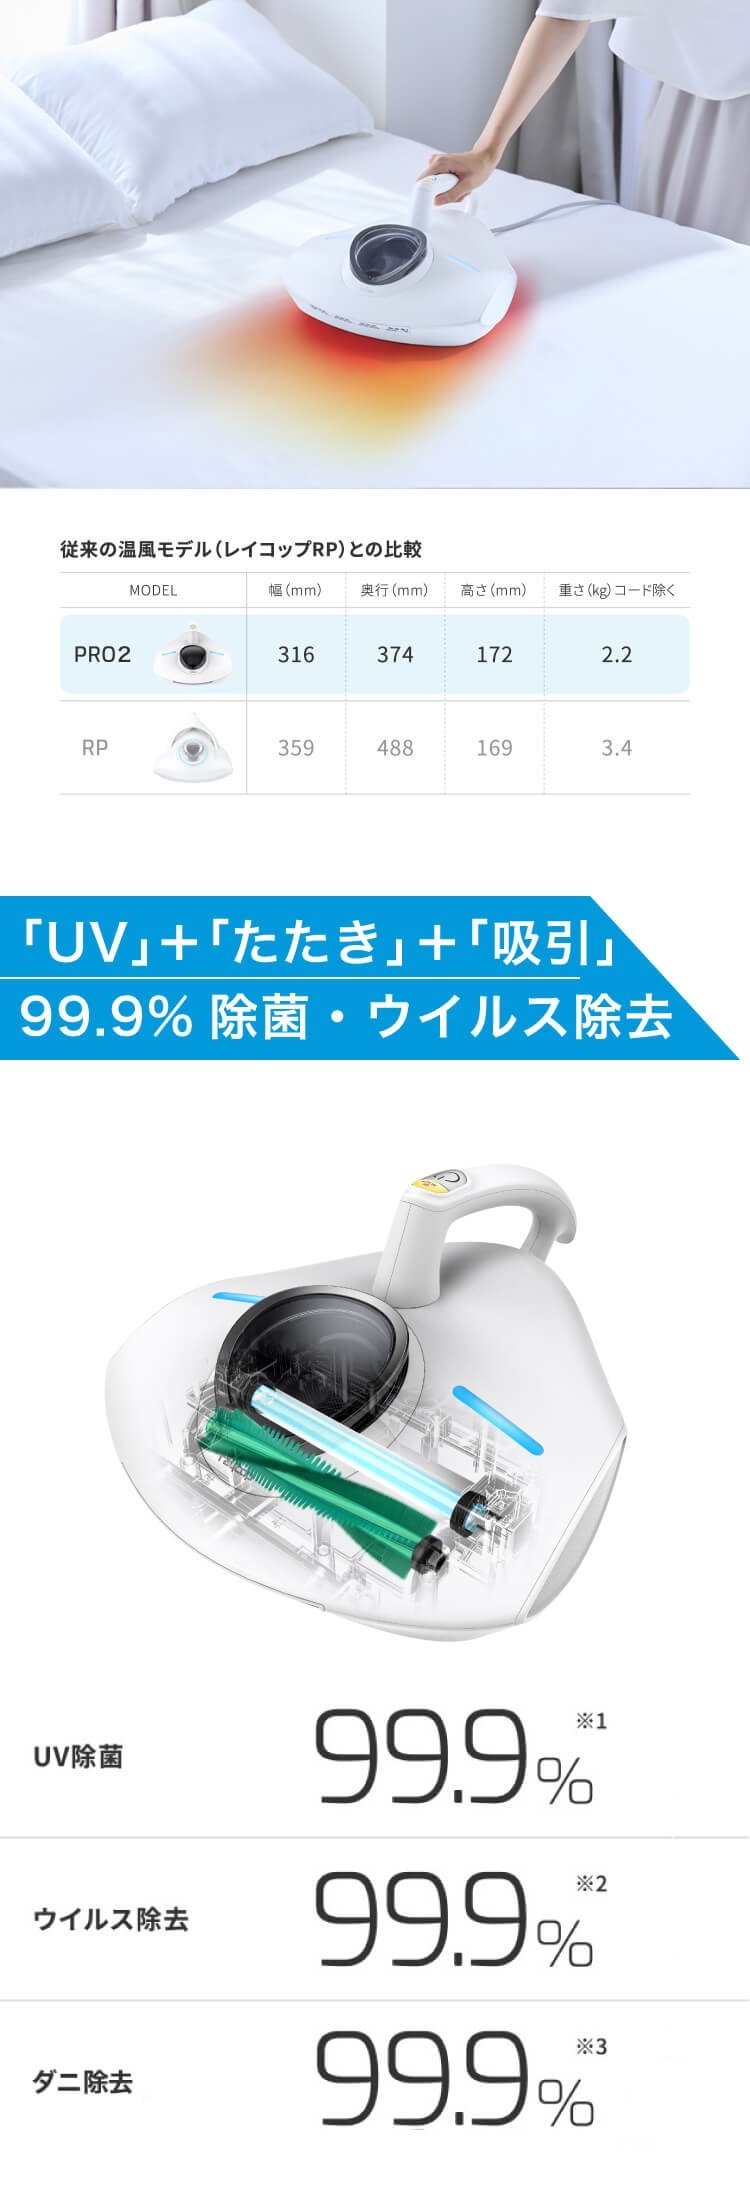 布団クリーナー 温風・UV除菌 レイコップPRO2 プロ ホワイト RS3 